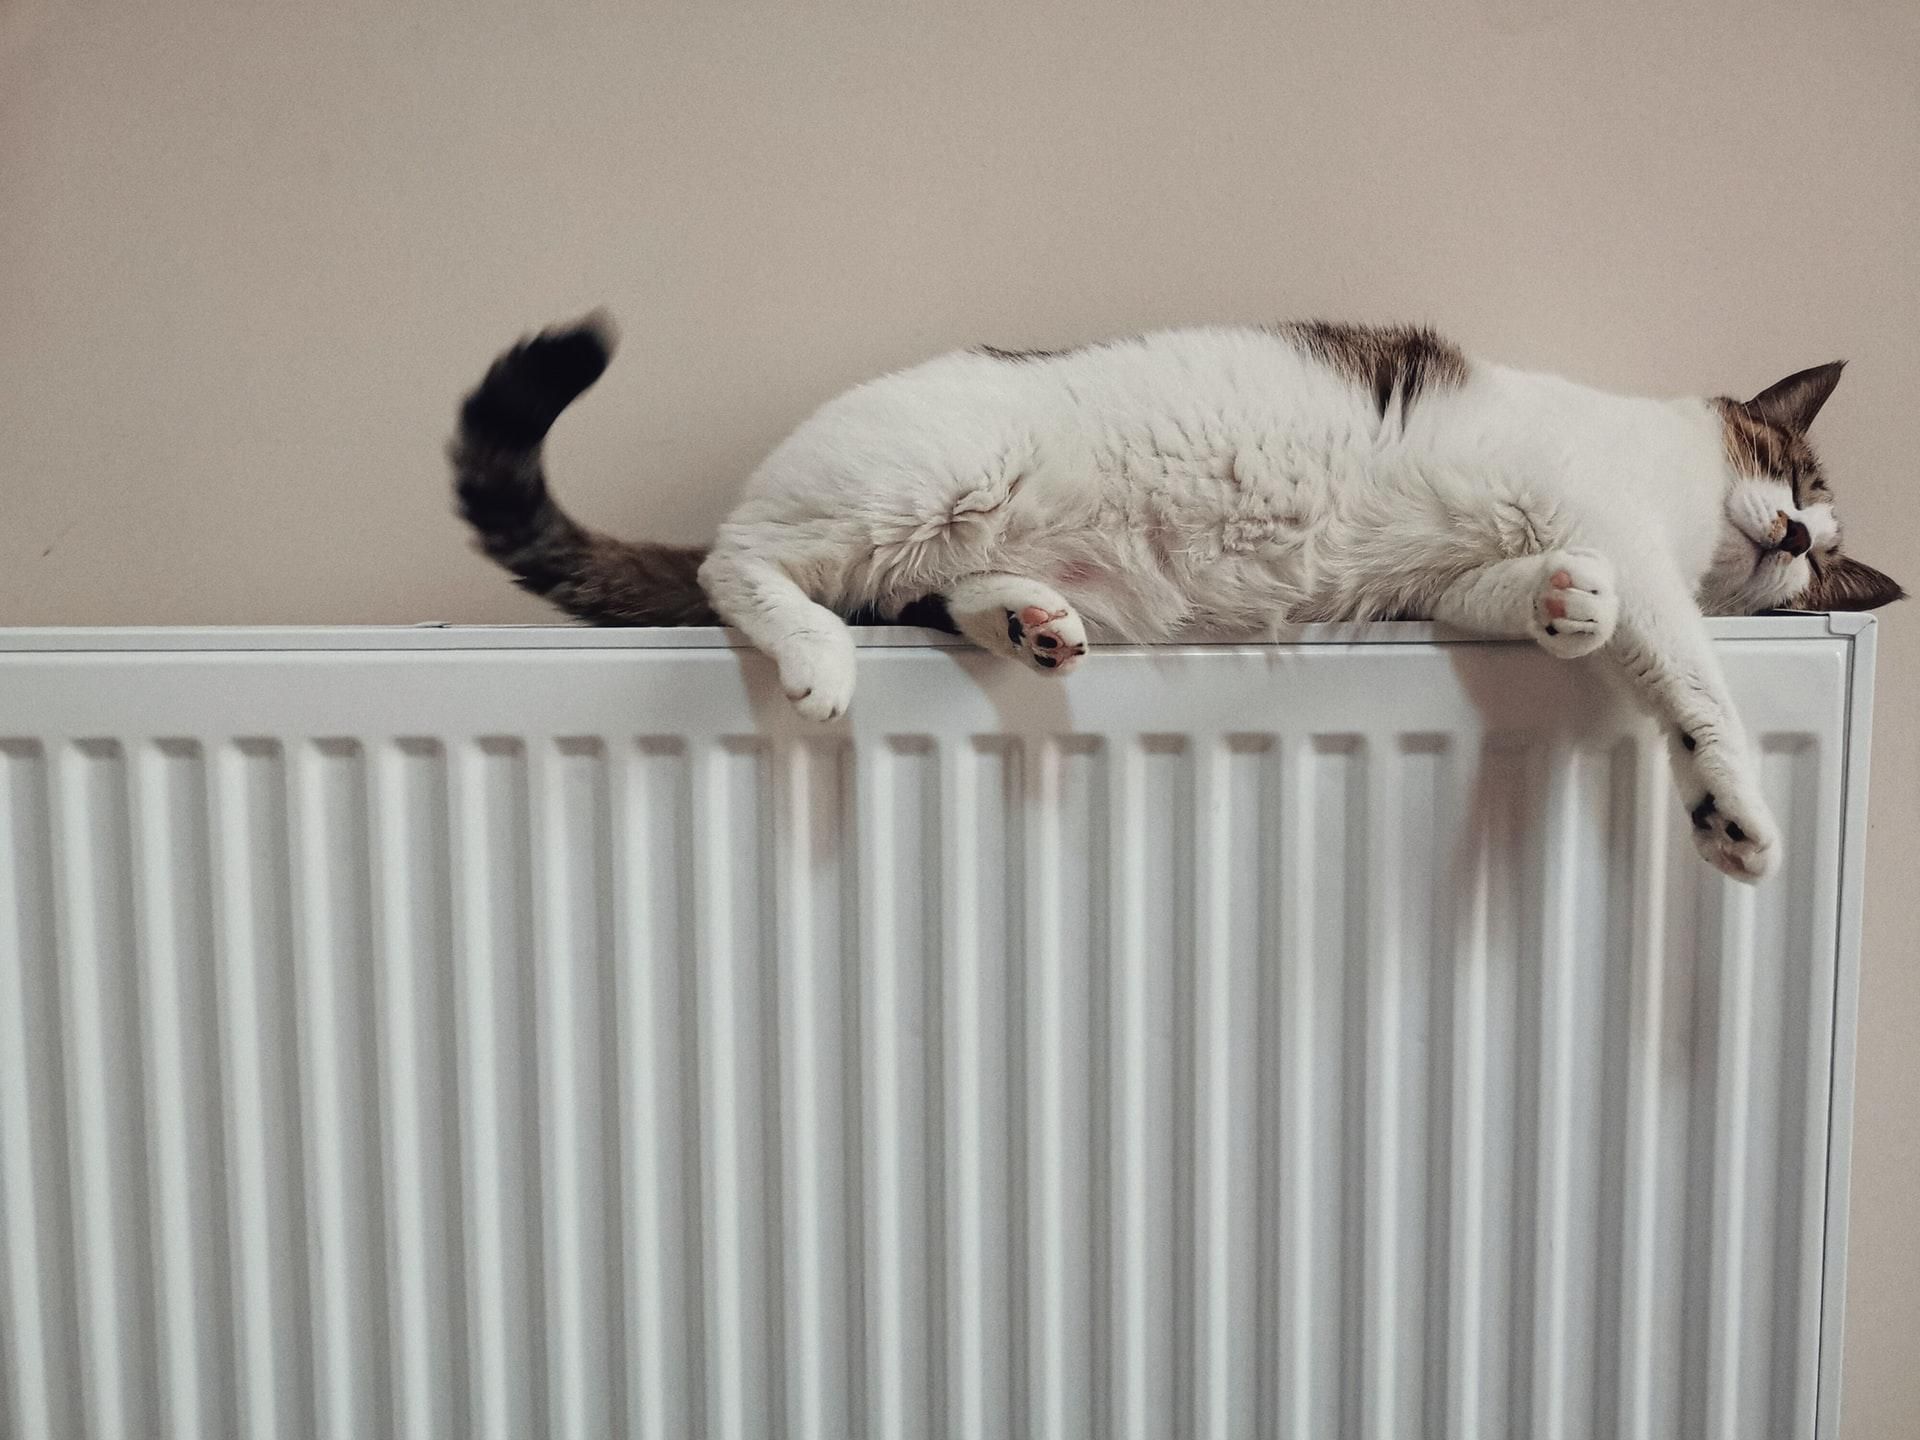 Macska a forró fűtőtesten